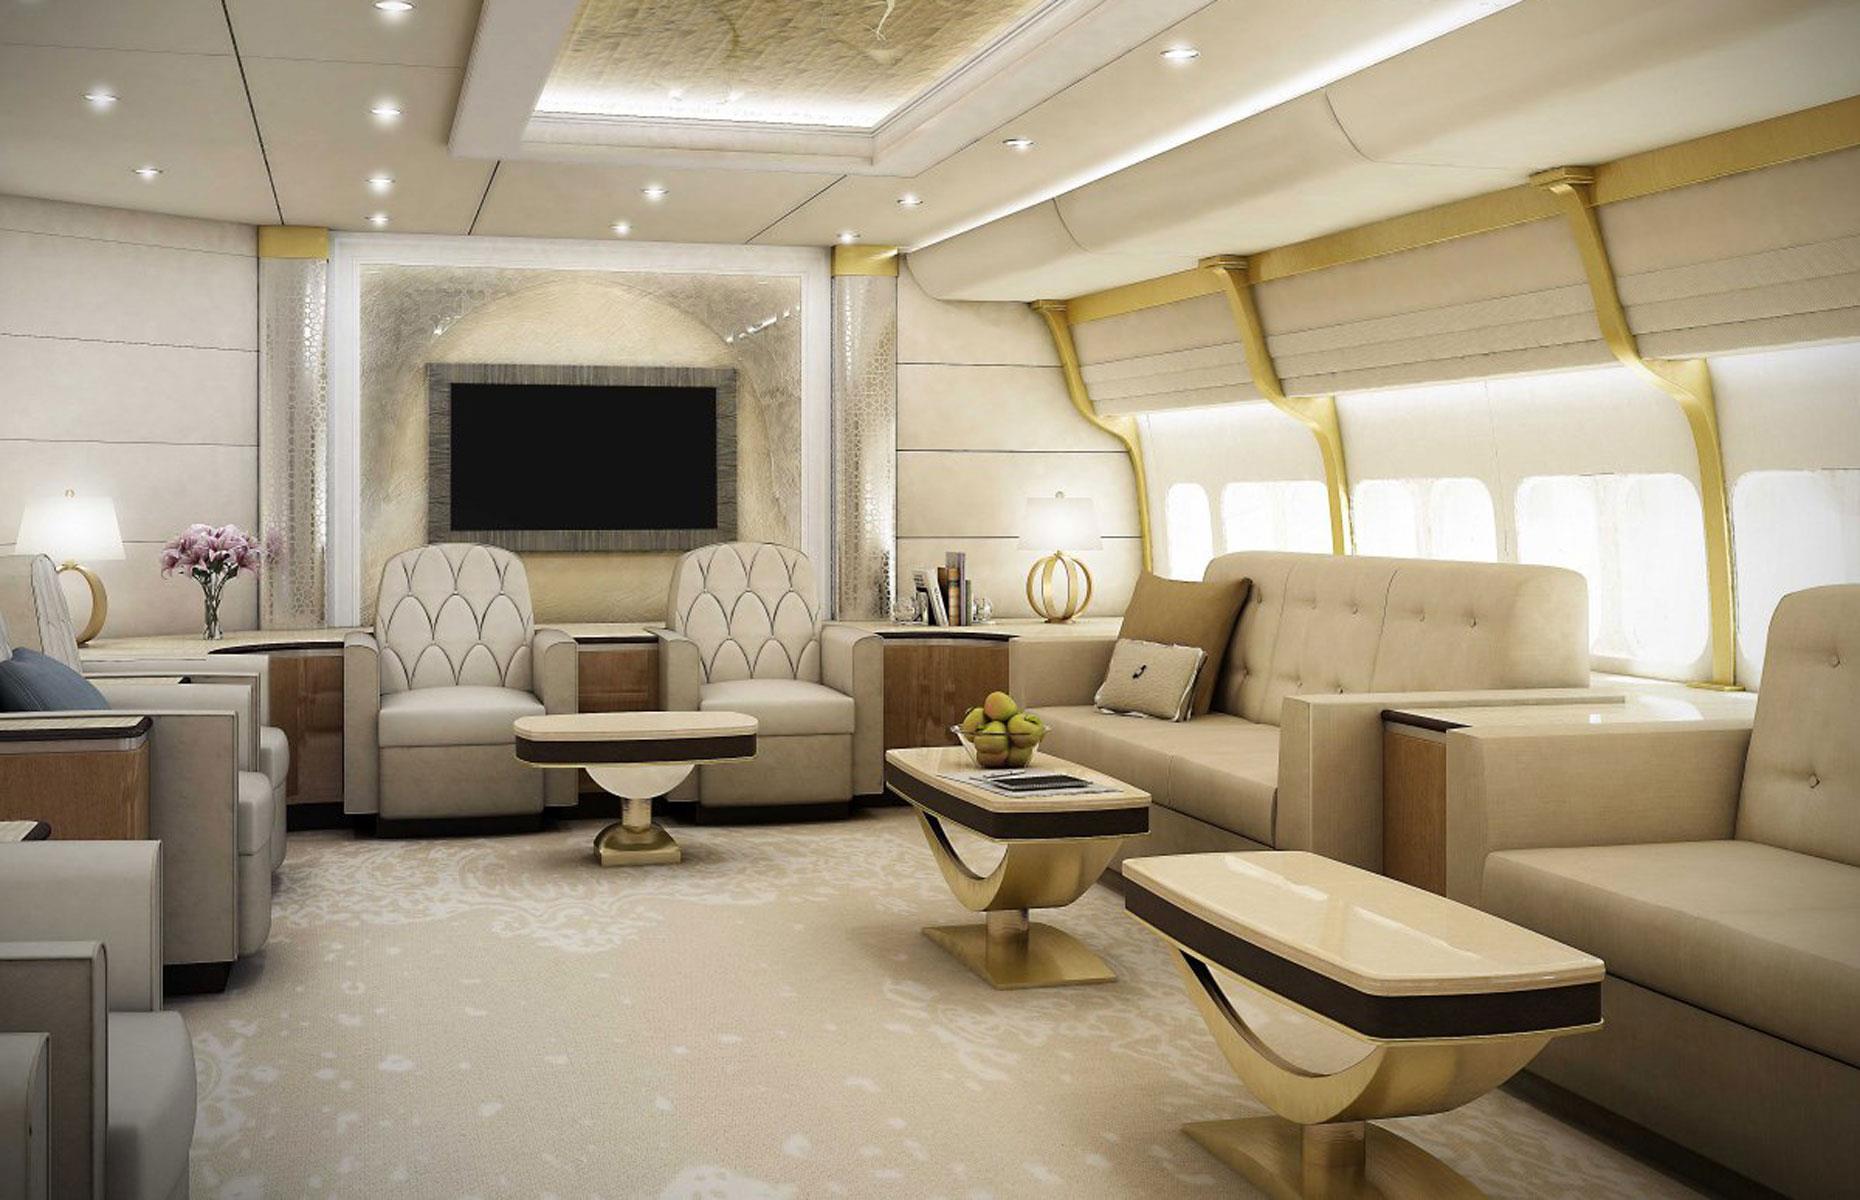 Interiorul avionului privat VIP Boeing 747-8i ce valorează 367 milioane de dolari (Sursă foto: Greenpoint Technologies)